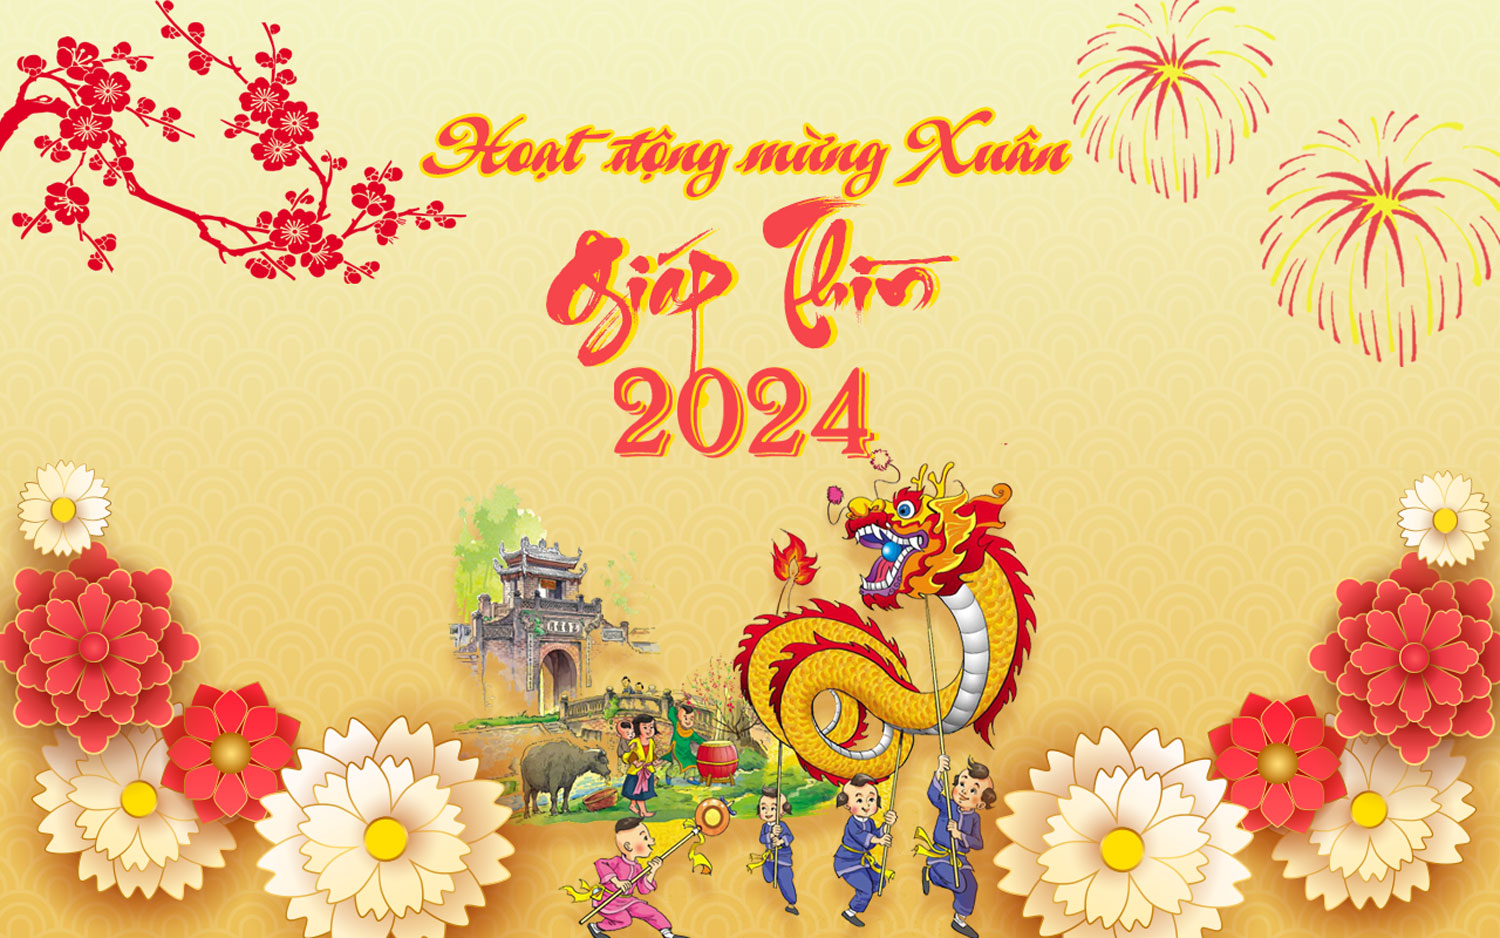 [Infographic] Hoạt động mừng Xuân Giáp Thìn 2024 tại Thành phố Thanh Hóa- Ảnh 1.